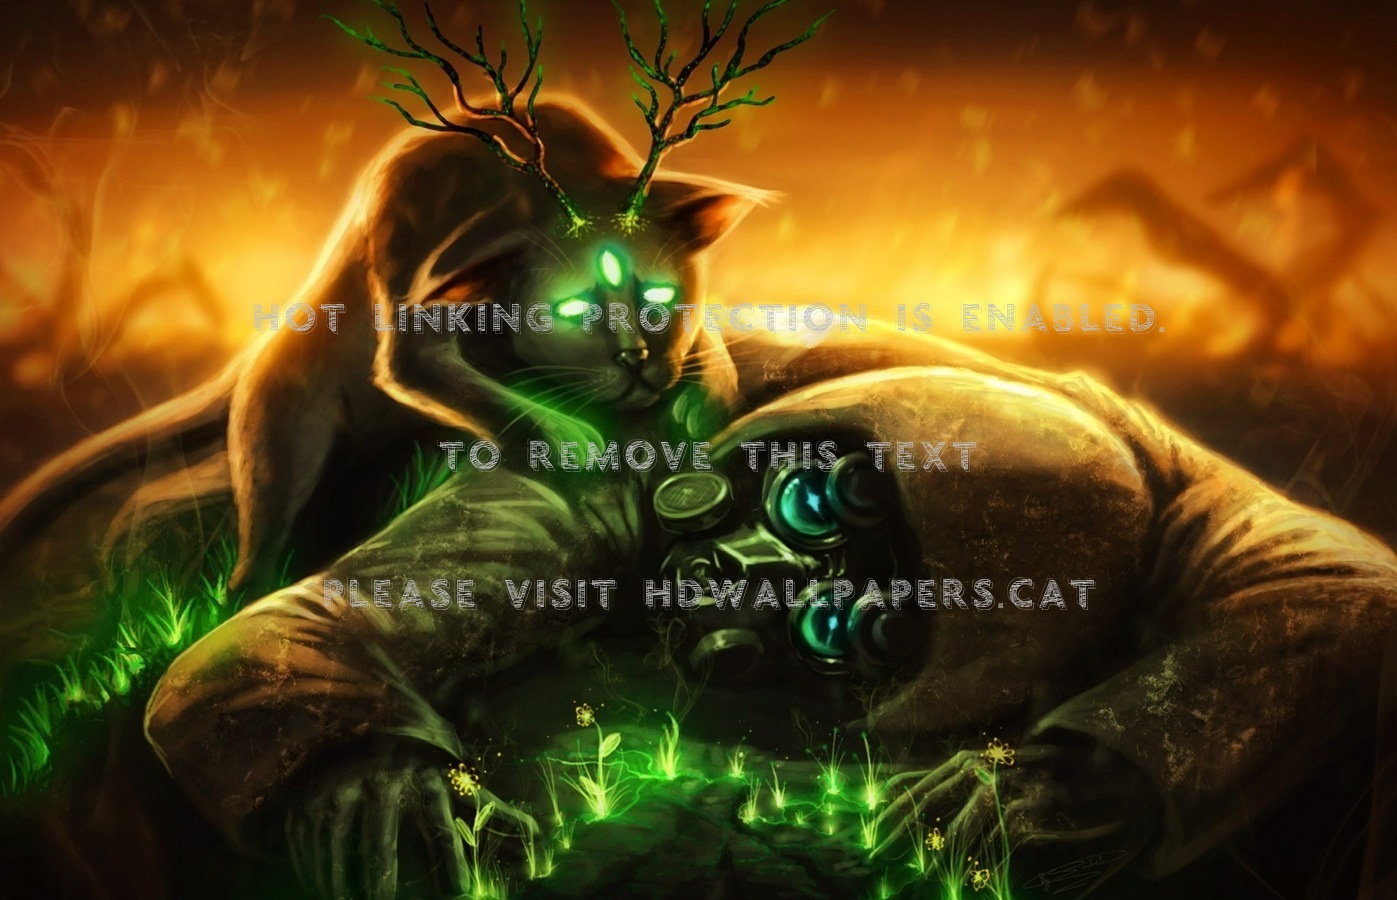 Toxic Wasteland Mask Sad Dark Green Fantasy - New Images Hd Download - HD Wallpaper 